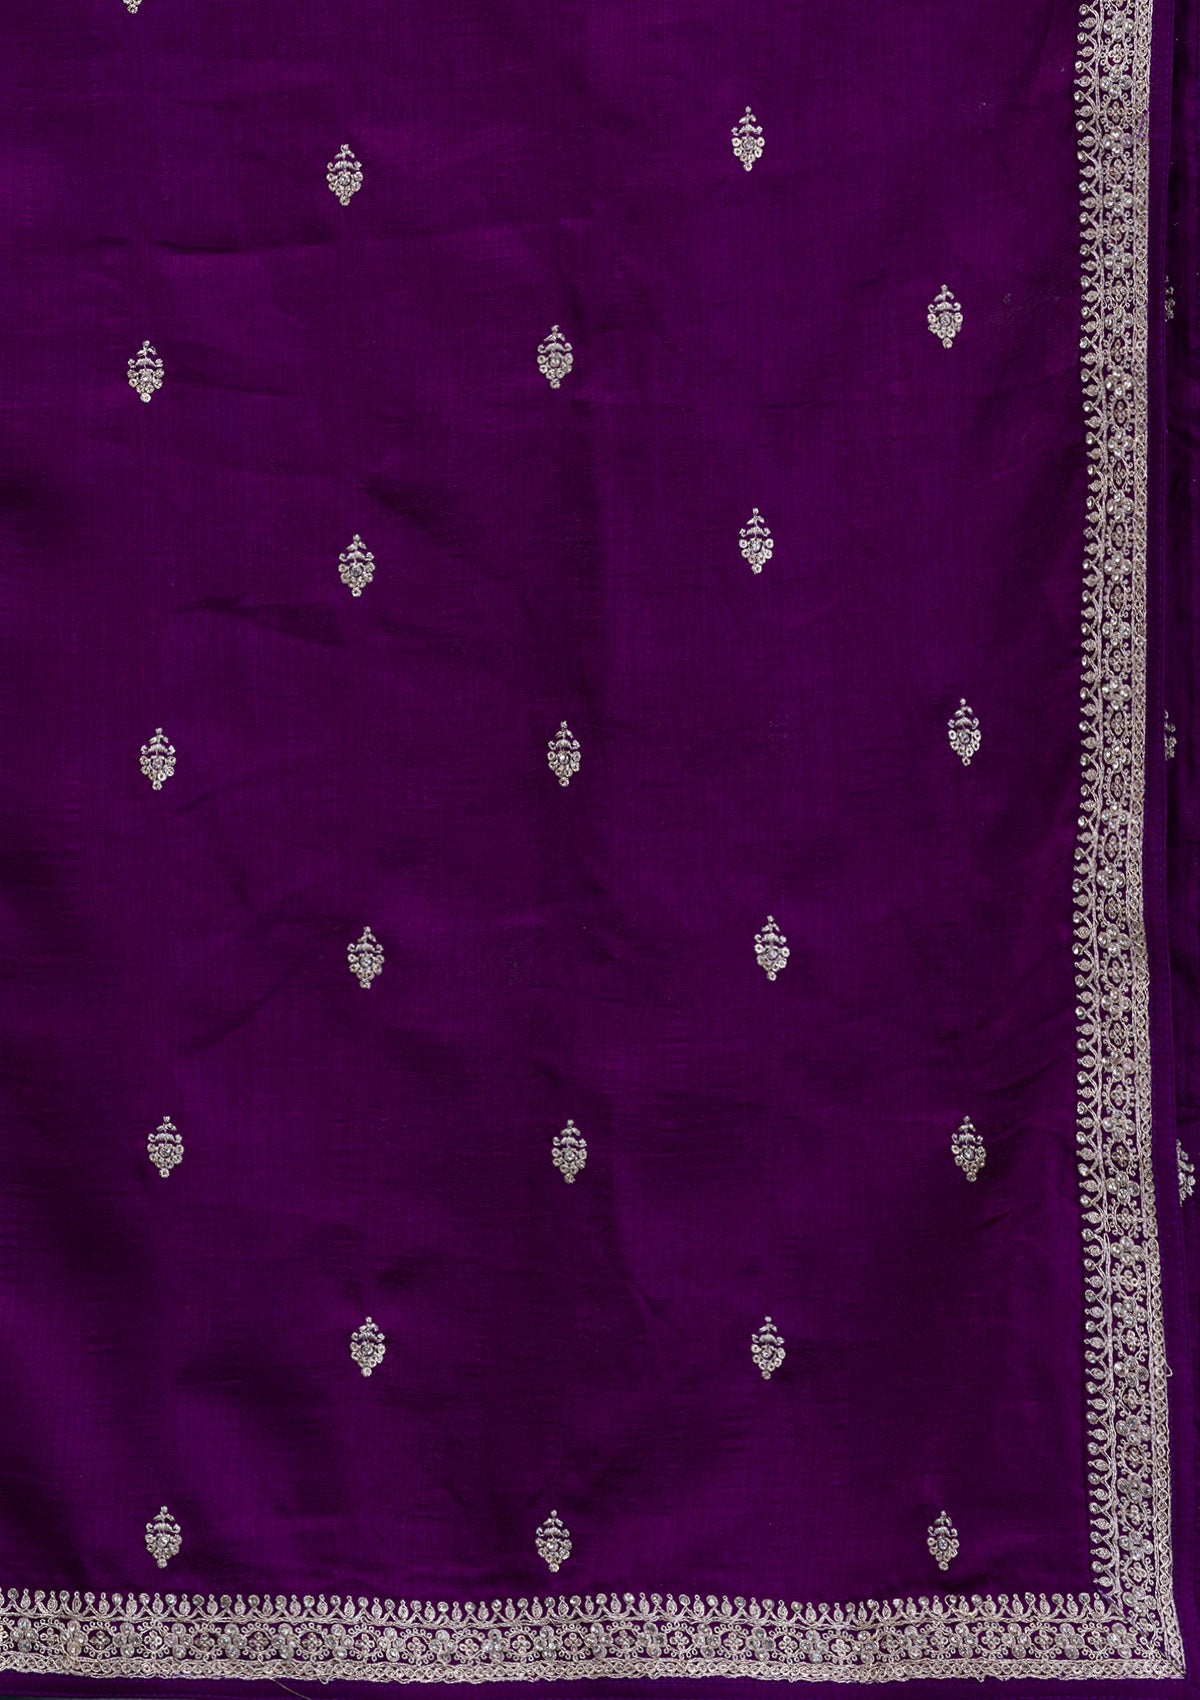 Purple Zariwork Raw Silk Readymade Salwar Suit